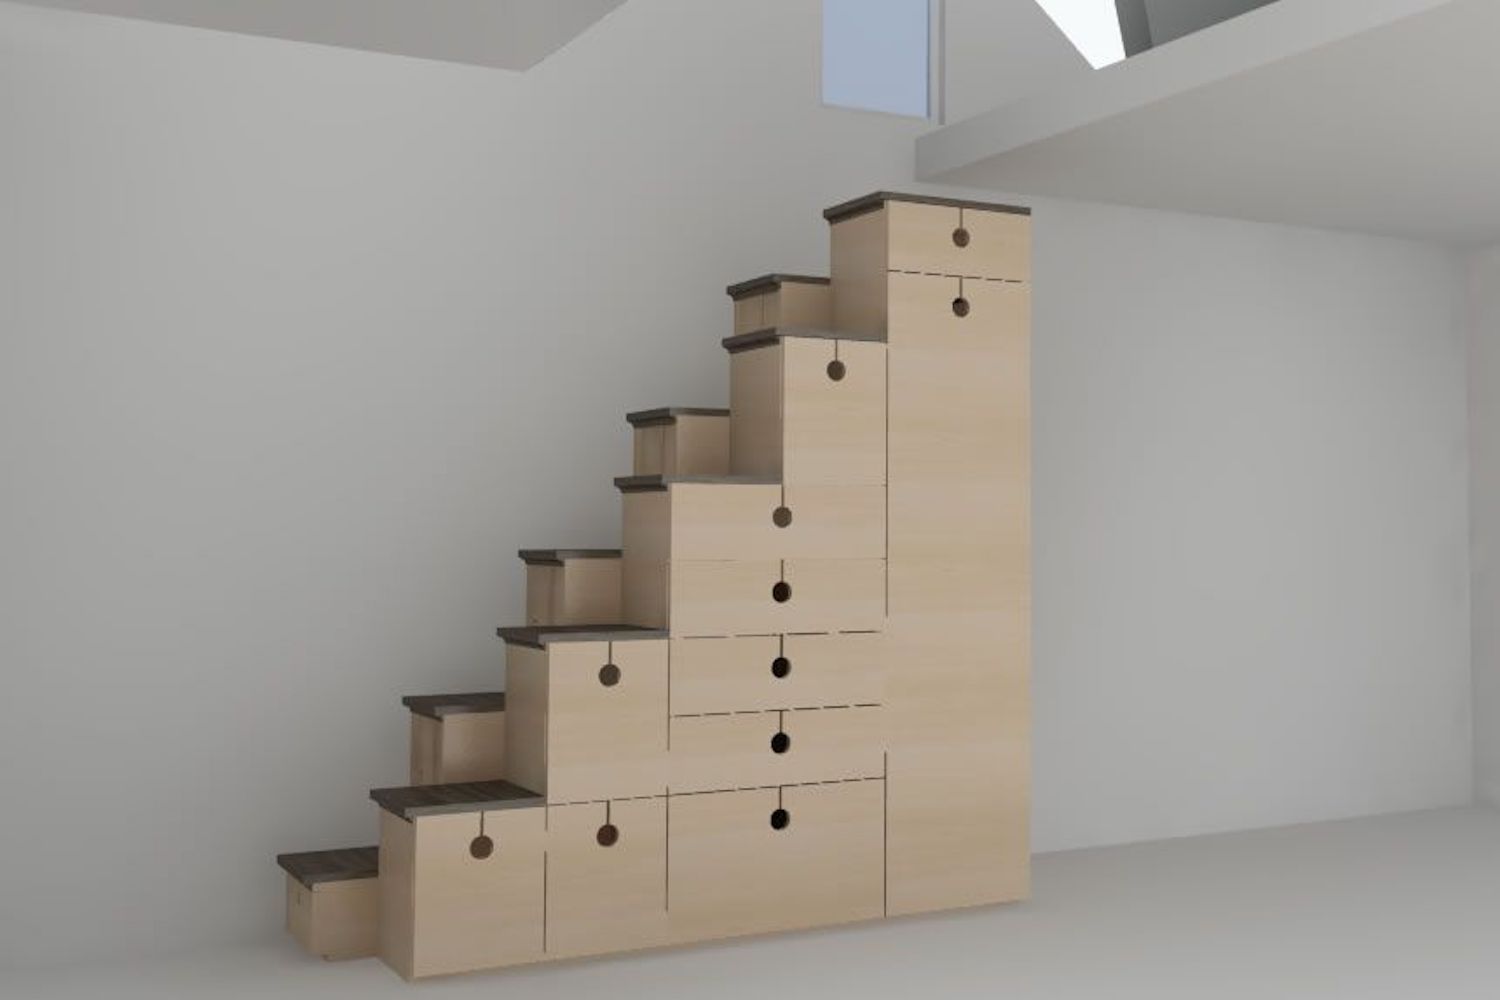 El diseño de escalera con peldaños alternos también es una unidad de almacenamiento de estilo japonés